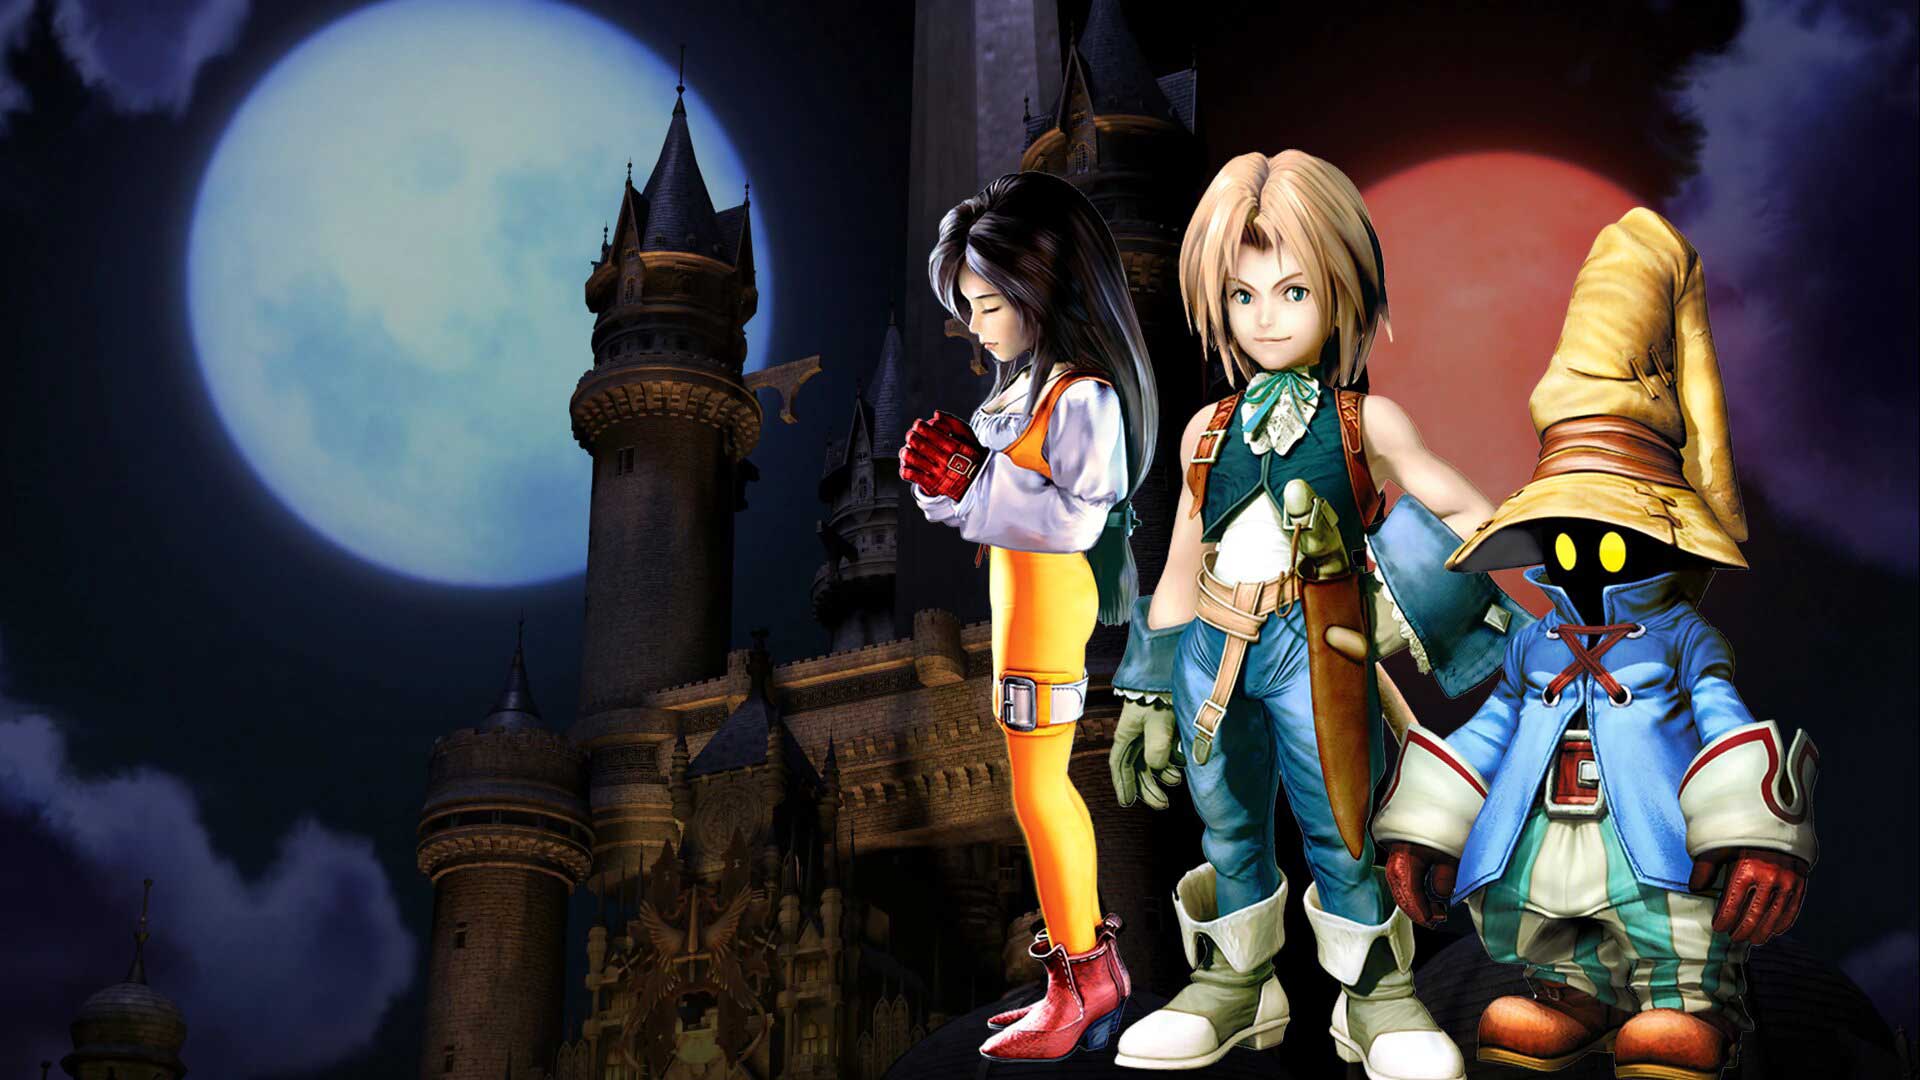 ساخت سریال انیمیشنی از روی بازی Final Fantasy IX